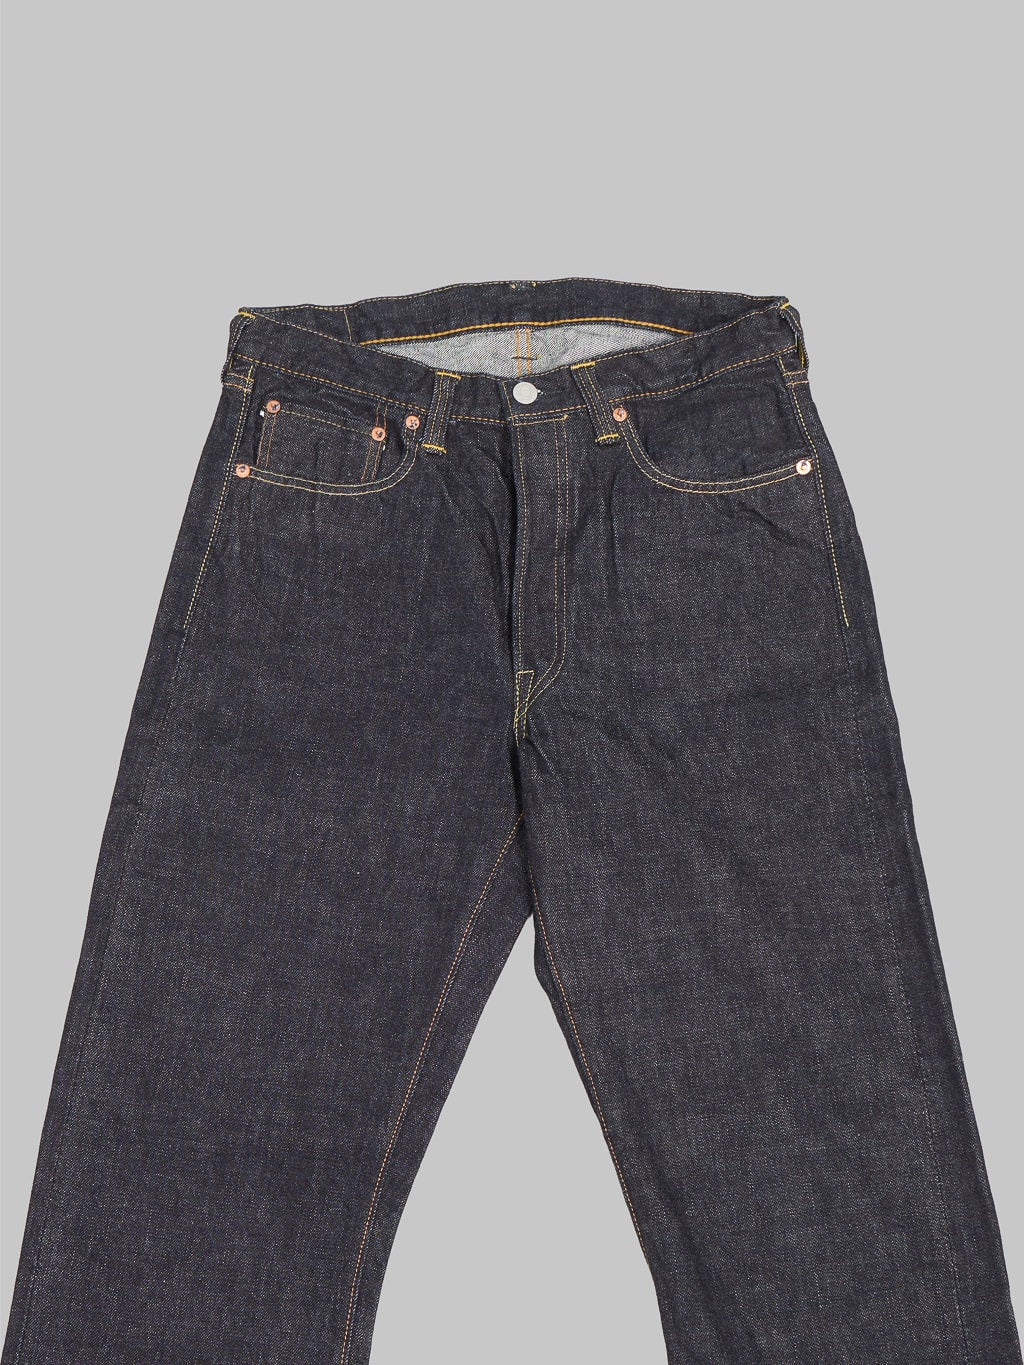 Fullcount 1101XXW regular Straight selvedge Jeans waist